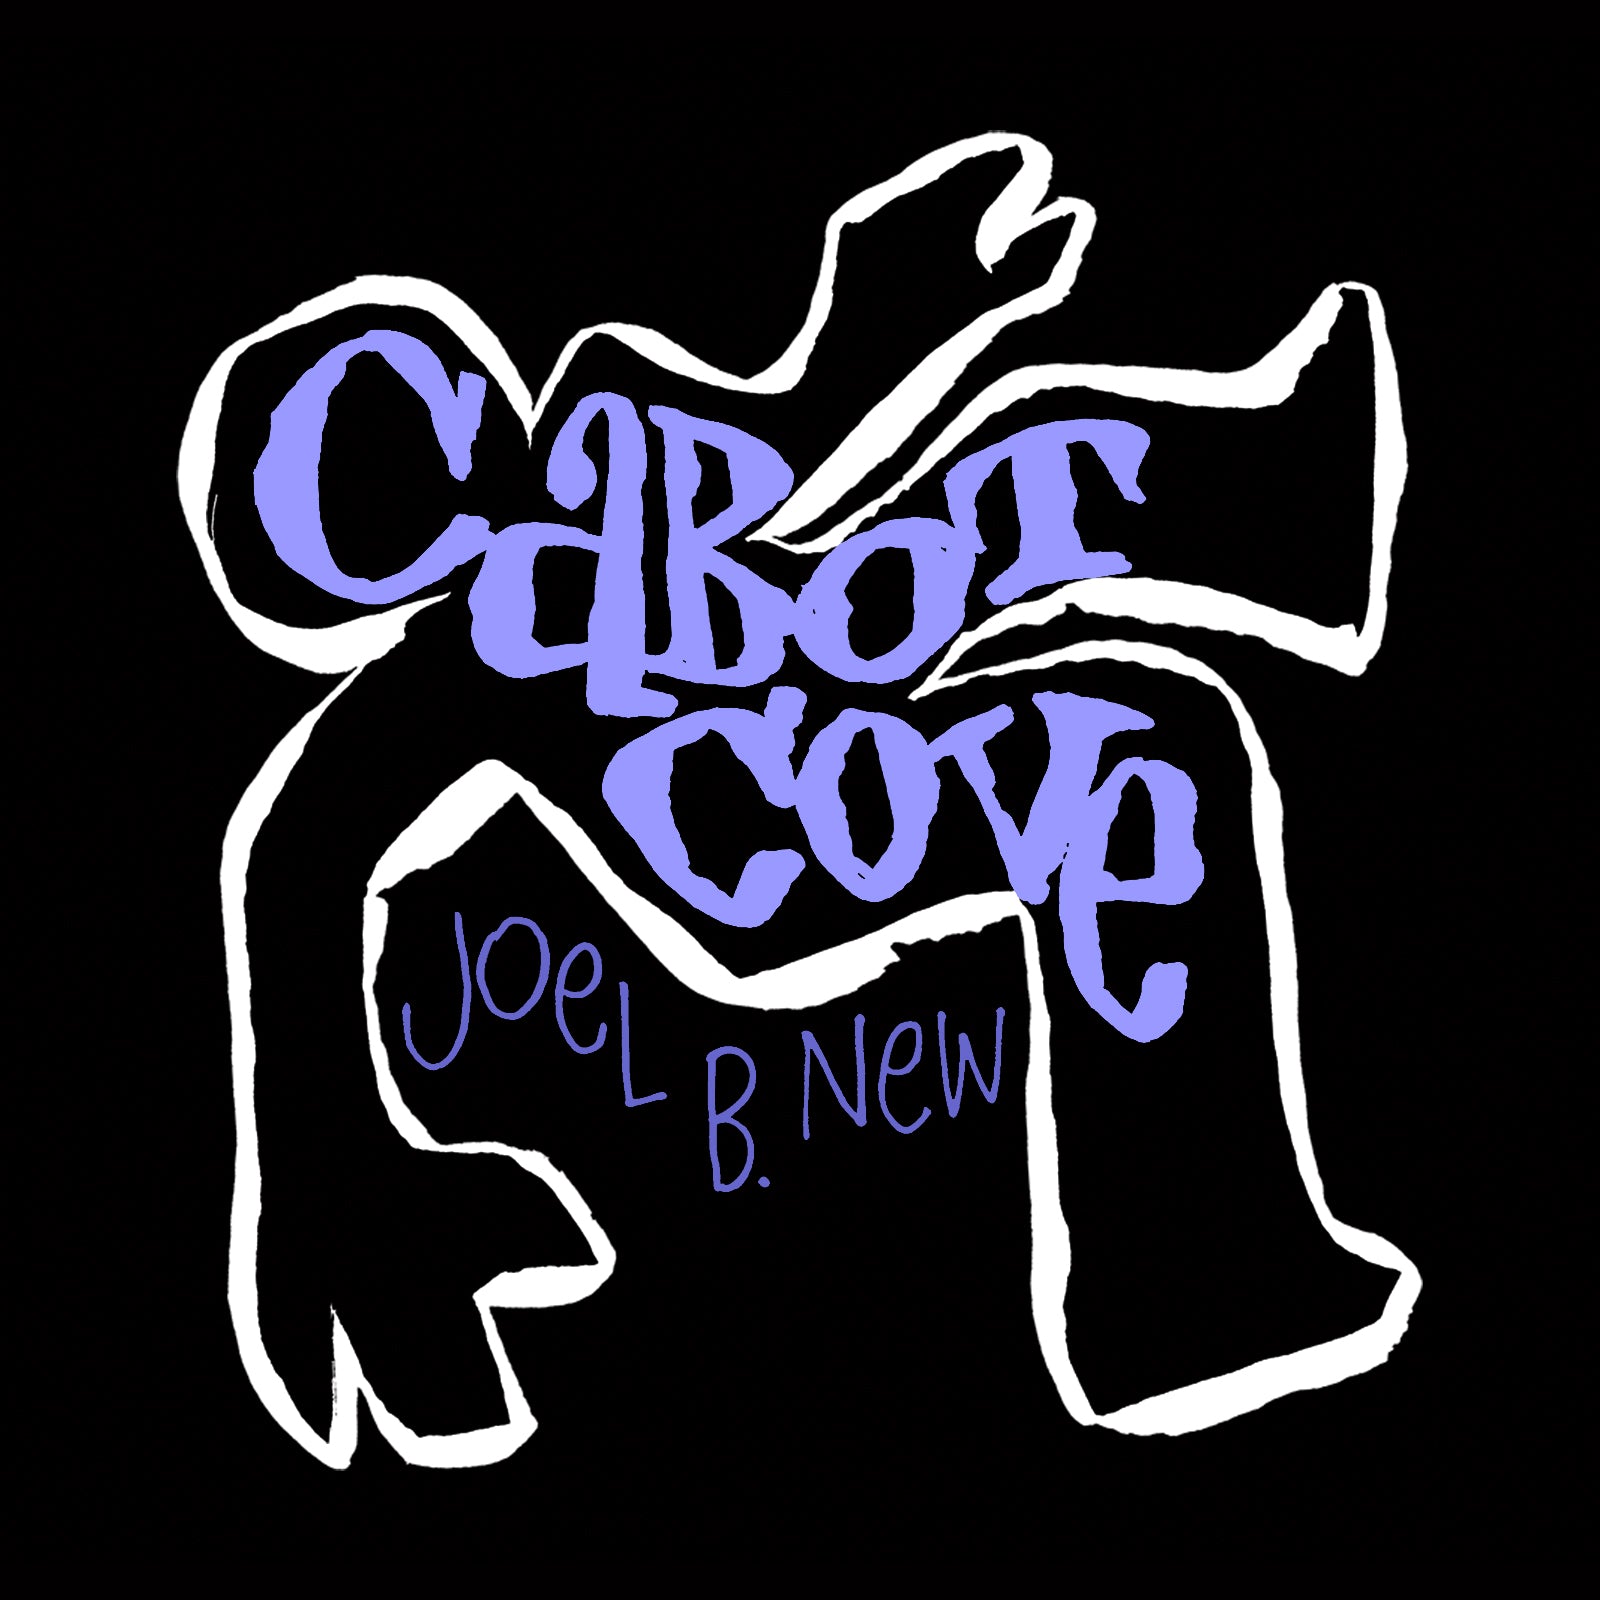 Joel B. New: Cabot Cove [CD]